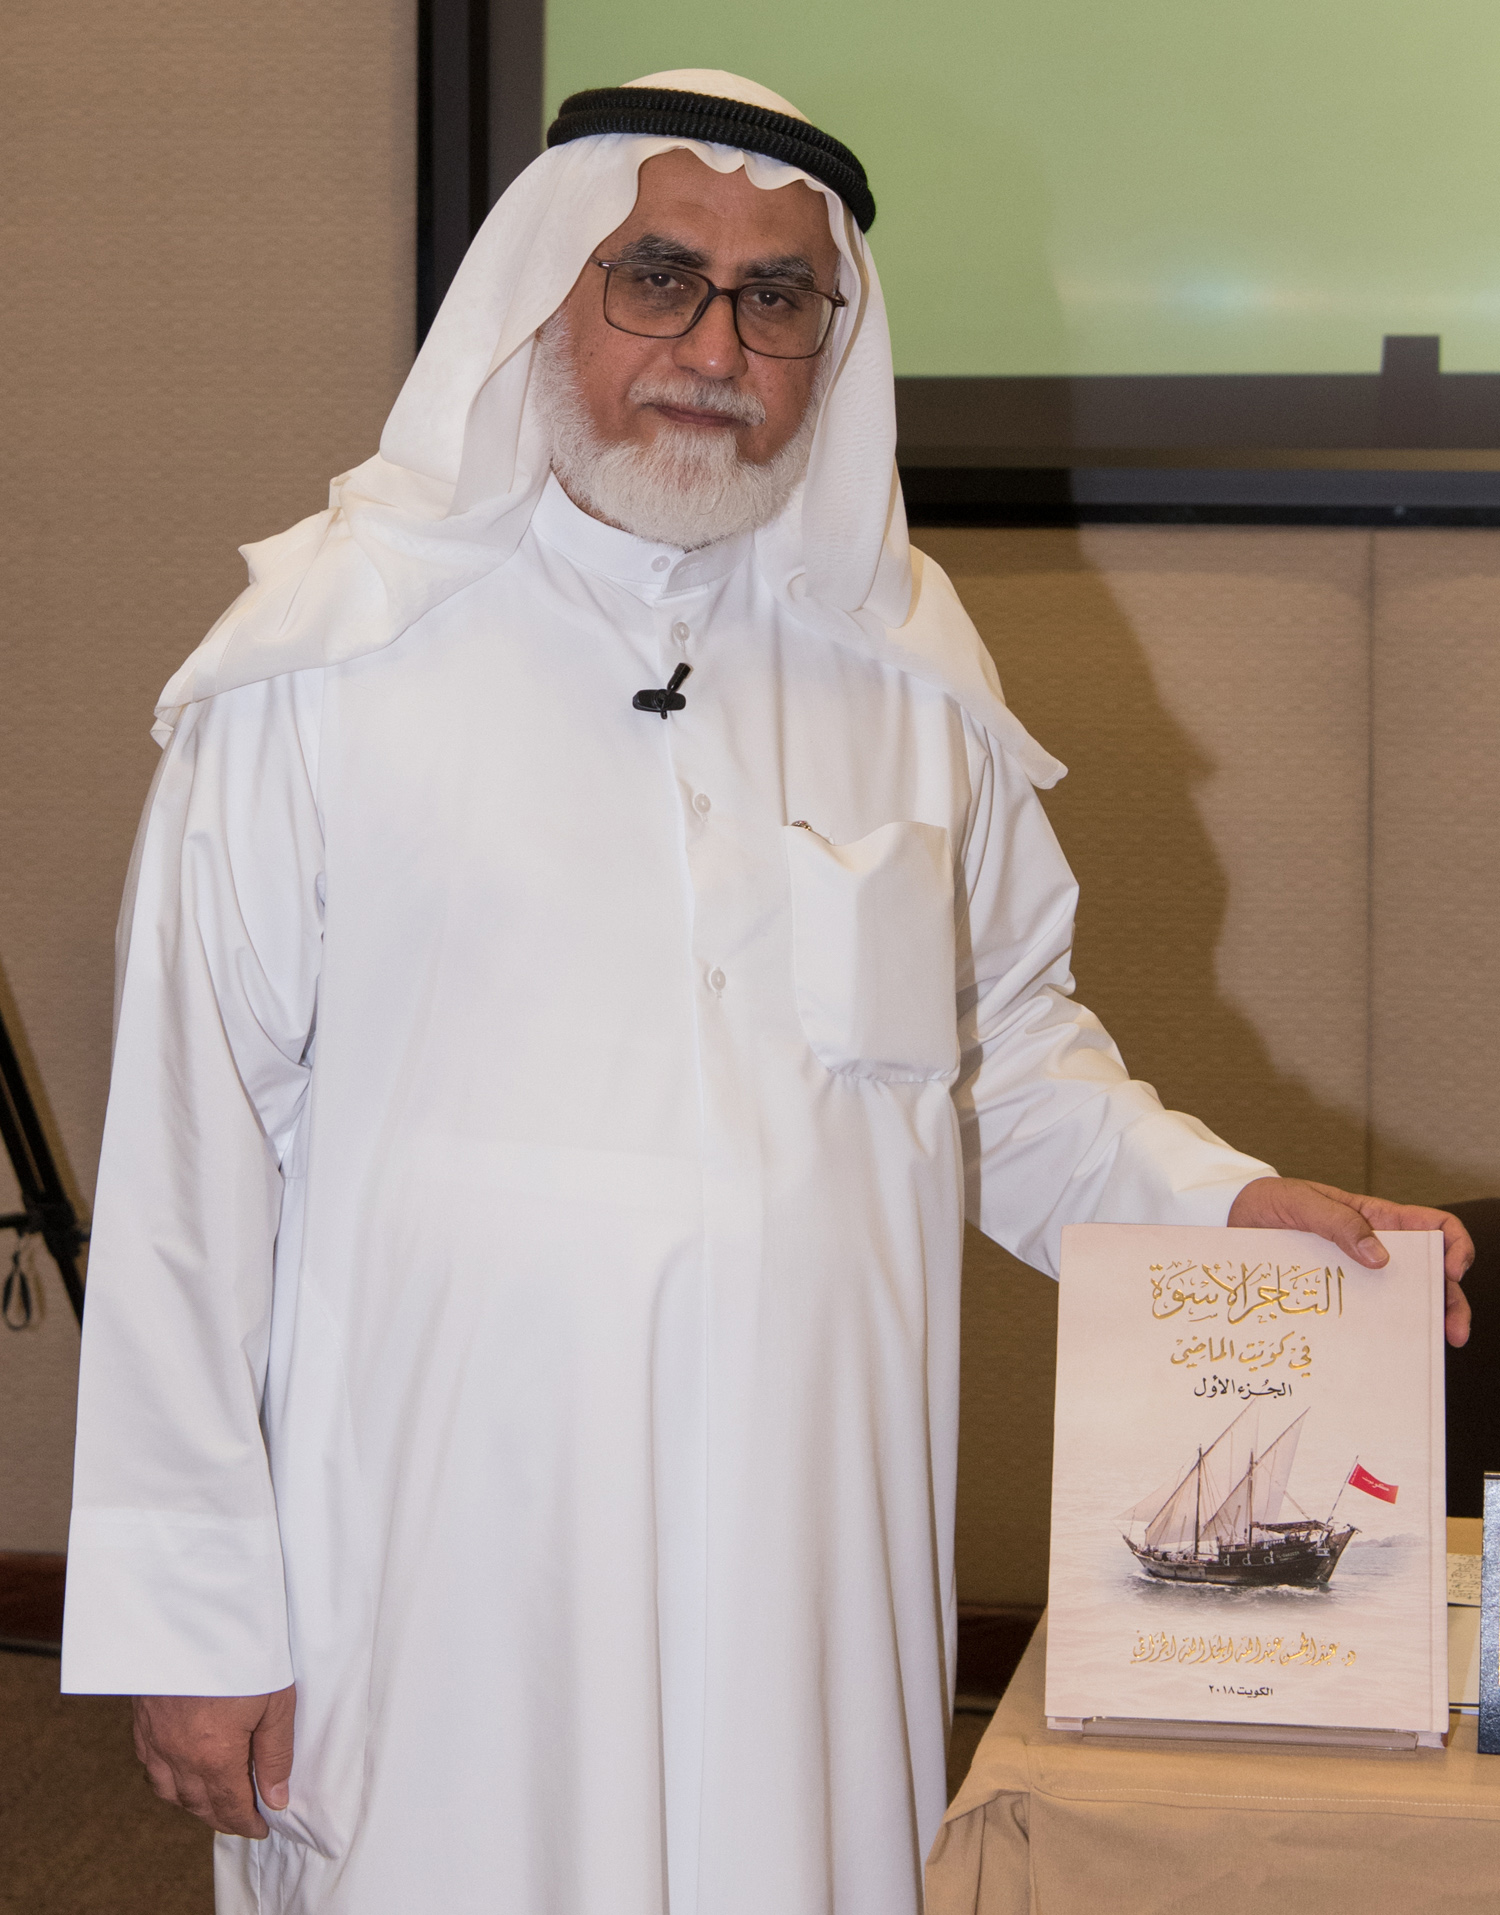 المؤلف الدكتور عبدالمحسن الخرافي مع كتابه